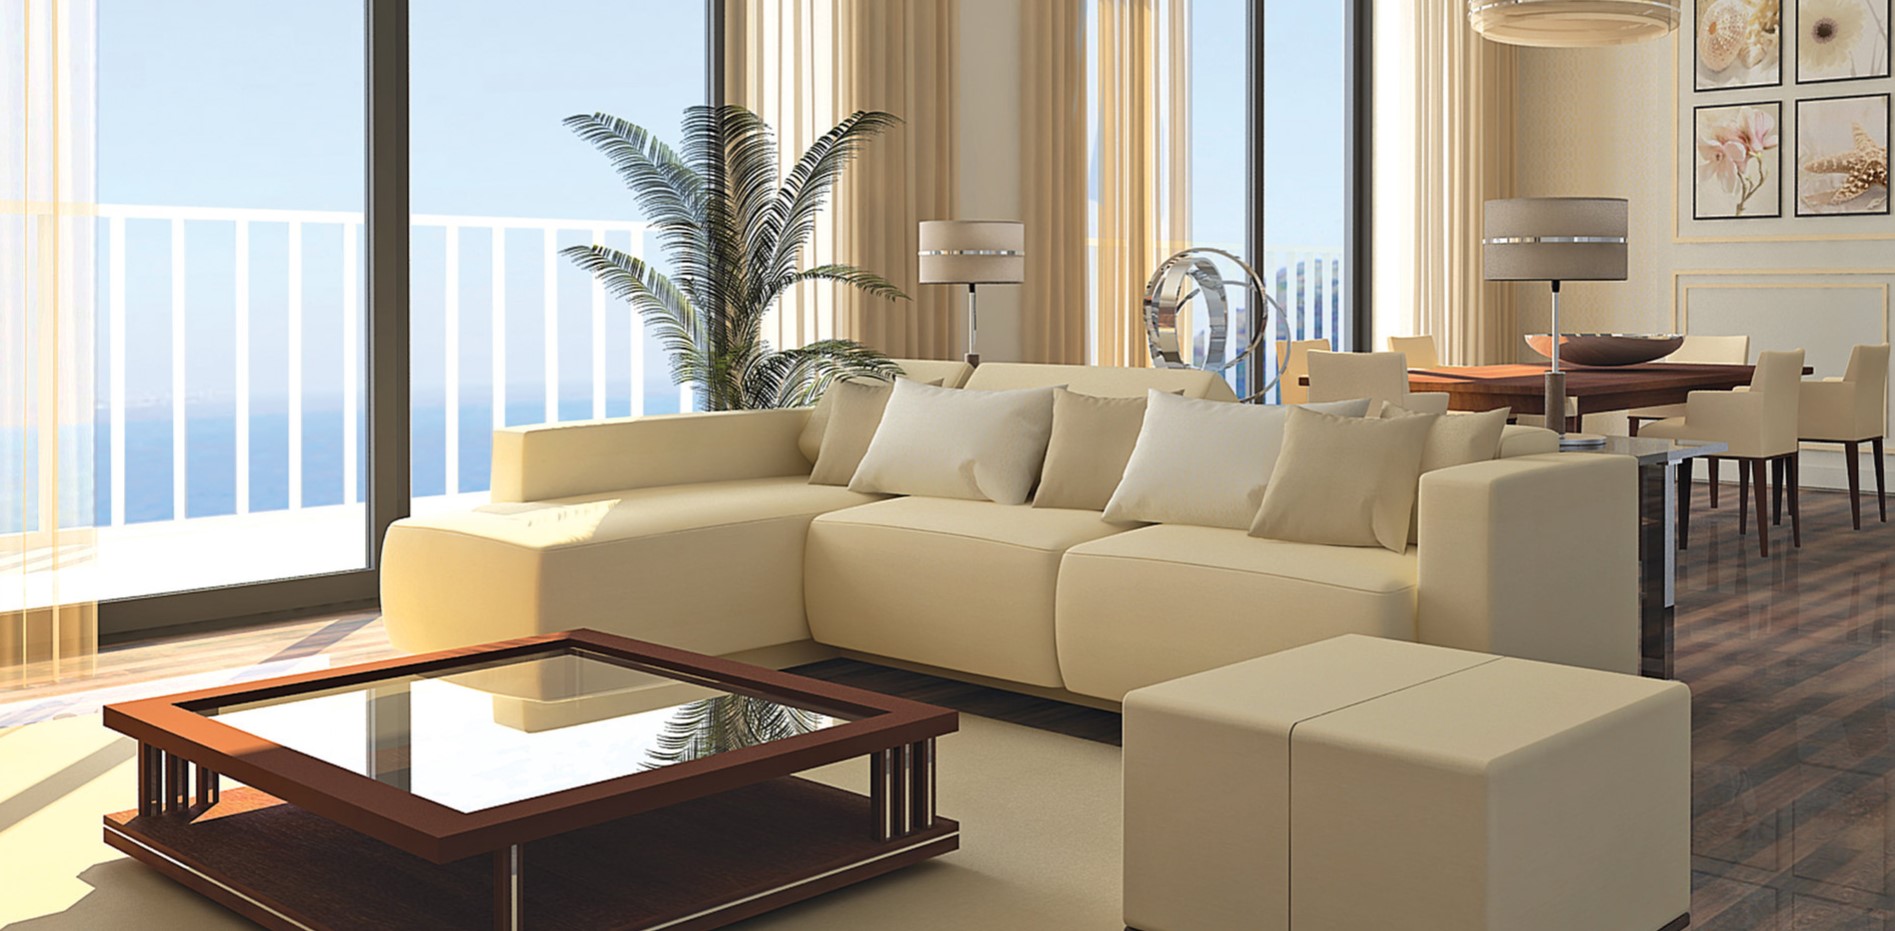 Светло-бежевый диван отлично подойдет для интерьера в стиле минимализм